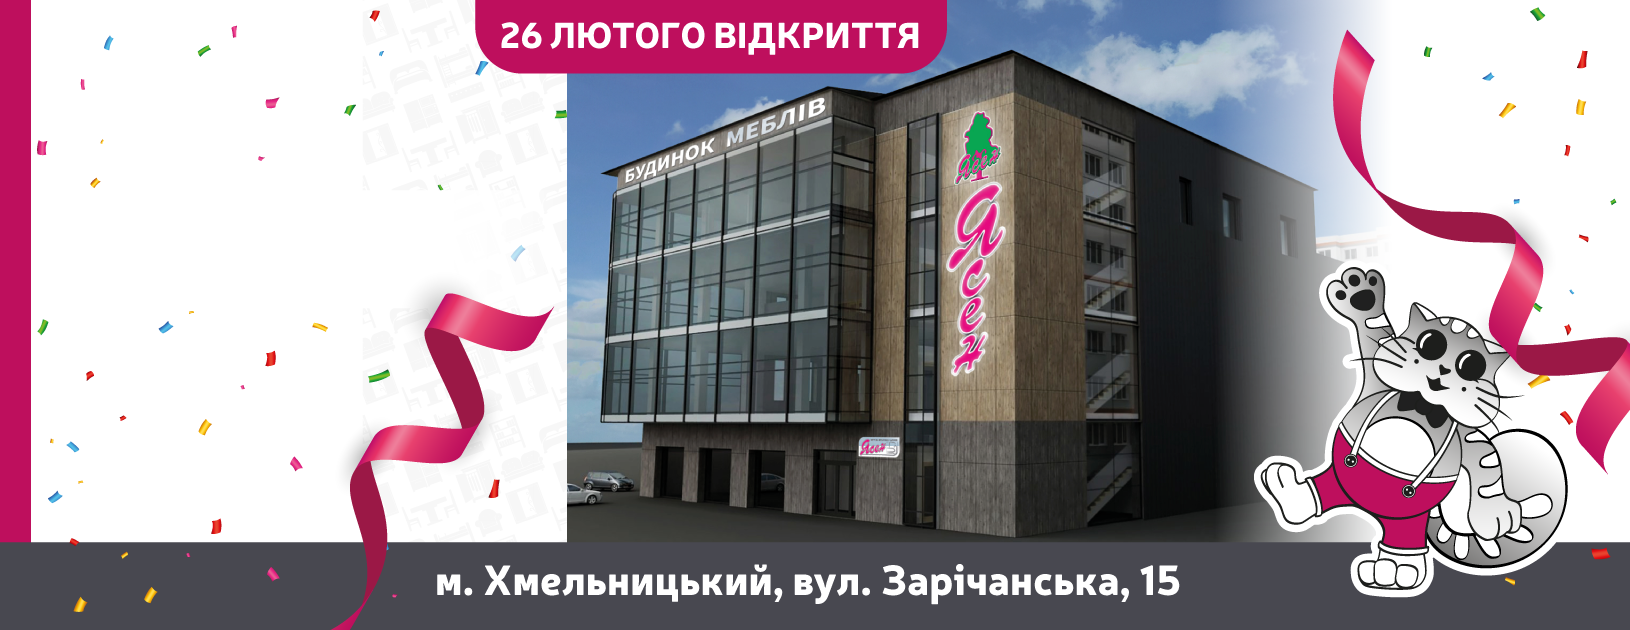 Відкриття будинку меблів "Ясен" у місті Хмельницький!!!